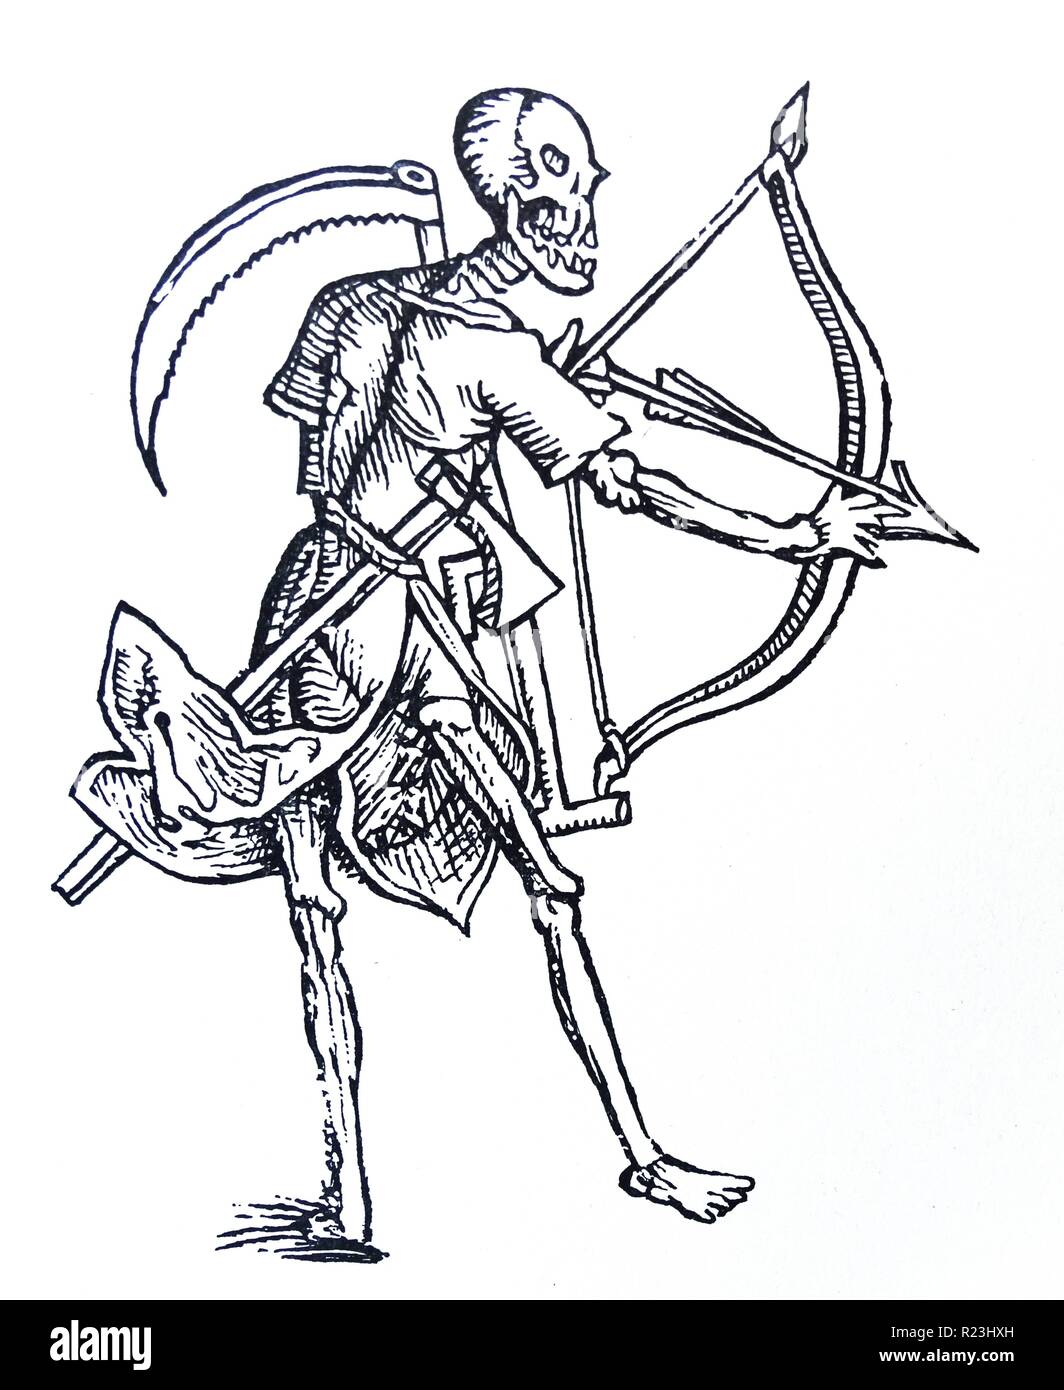 Dibujo de línea medieval de la muerte con un arco y una guadaña. Fecha del siglo XIII. Foto de stock